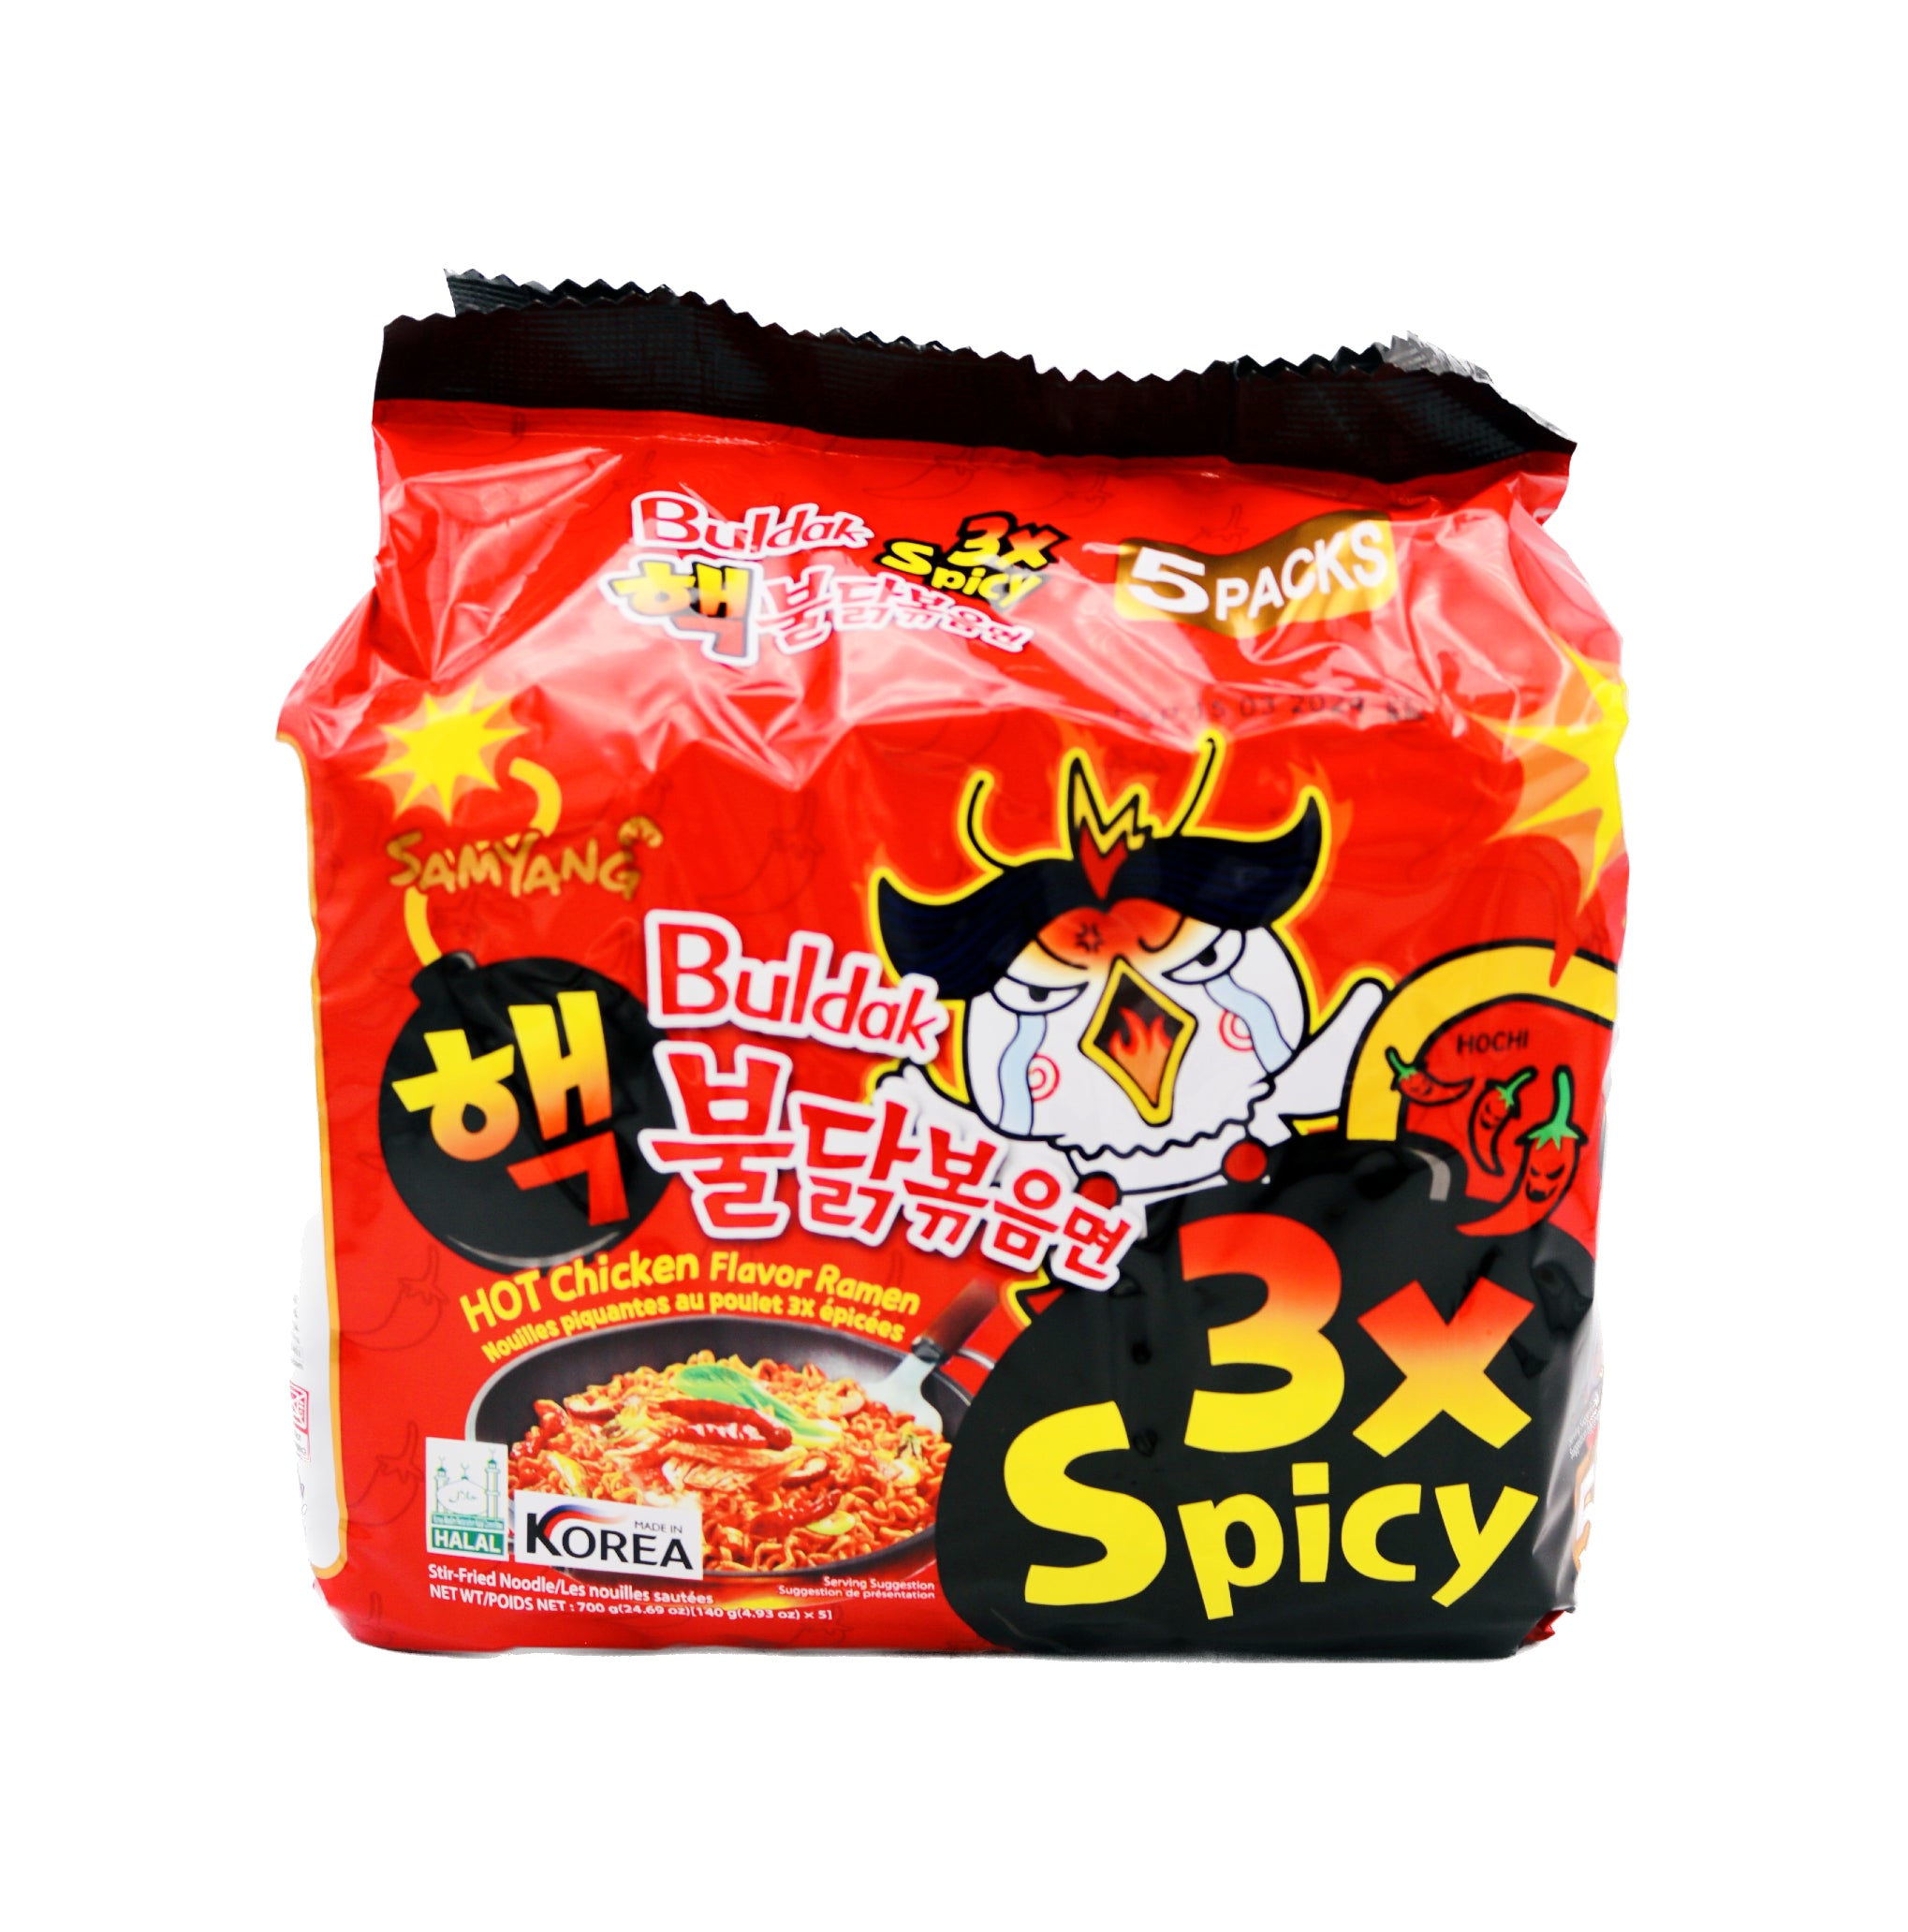 Samyang Buldak Hot Chicken Flavour Ramen - 3x Spicy 700g